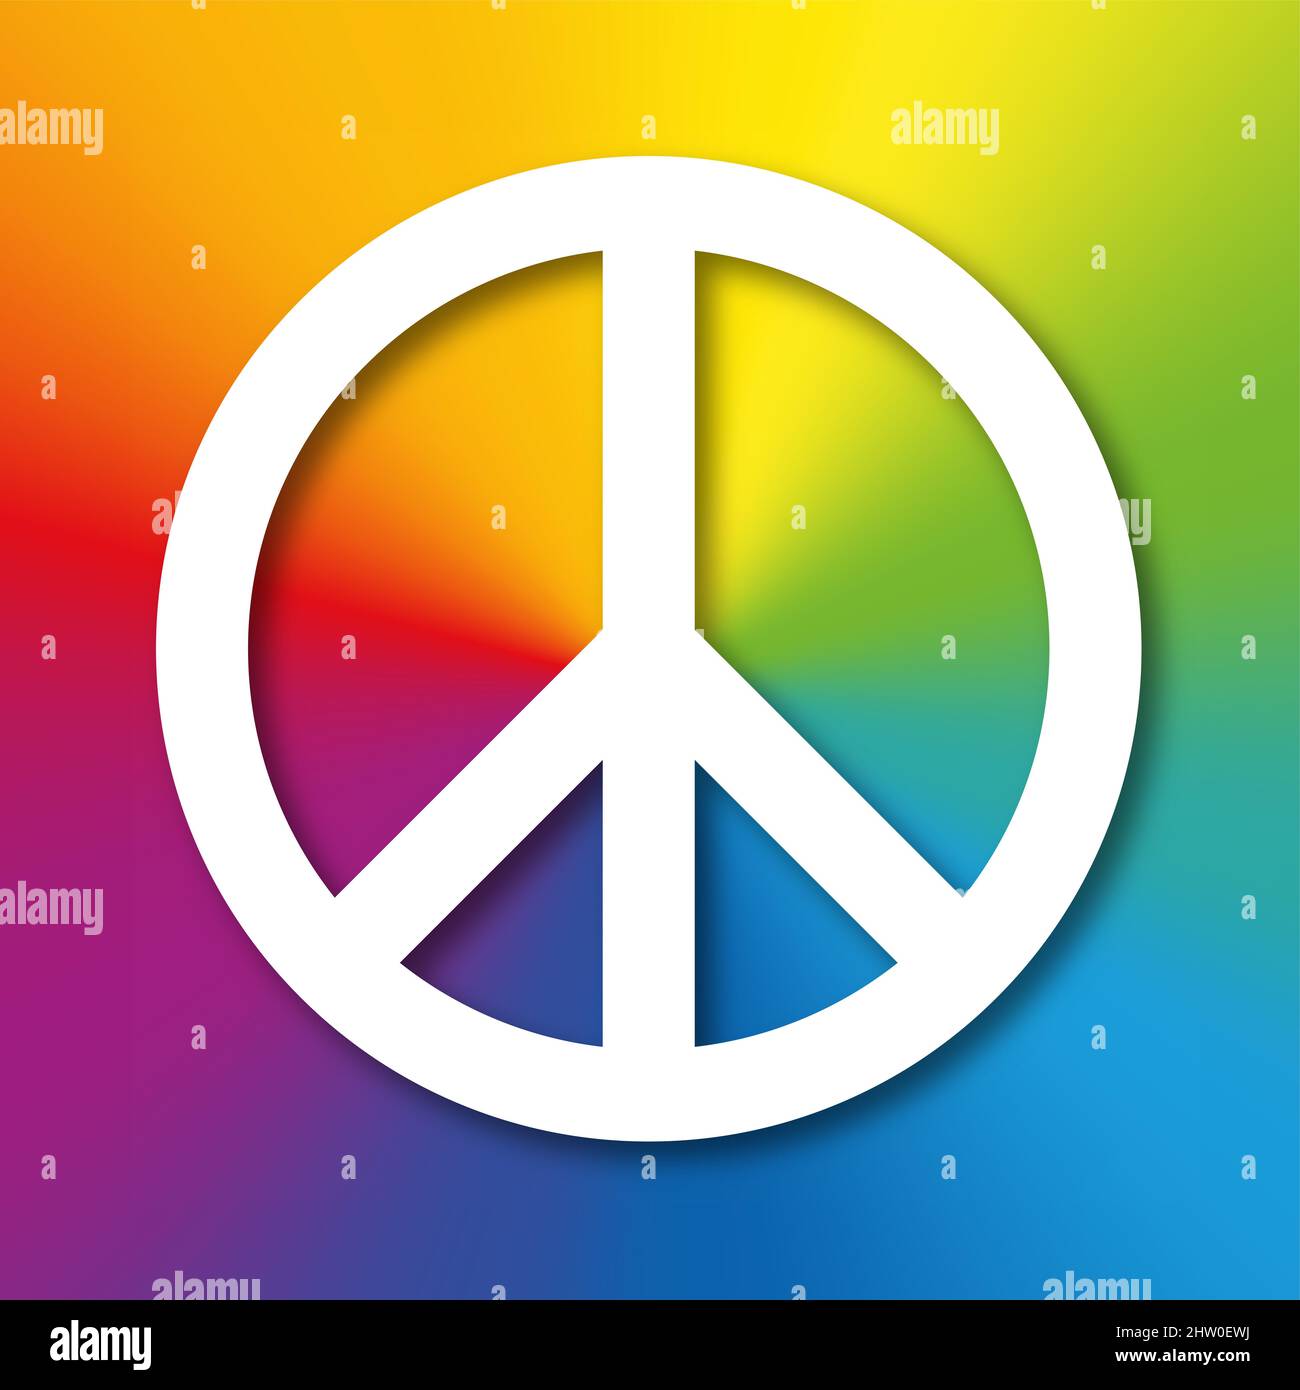 Simbolo bianco di pace con ombra, su sfondo arcobaleno colorato. Originariamente progettato per il movimento di disarmo nucleare, ora noto come segno di pace. Foto Stock